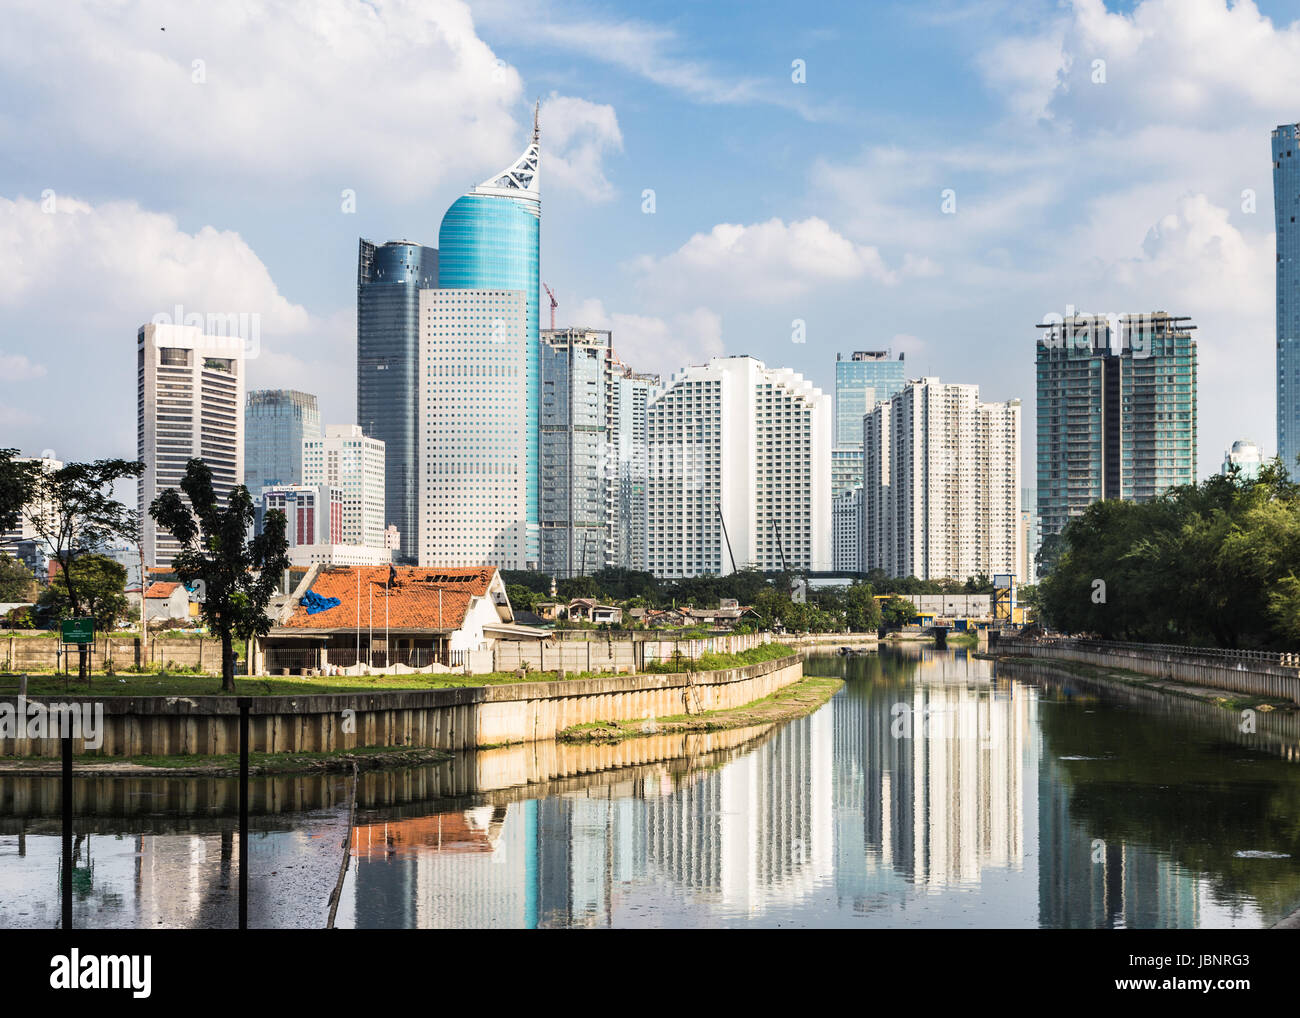 Gratte-ciel, les immeubles de bureaux et hôtels de luxe towers reflète dans l'eau d'un canal à Jakarta sur une journée ensoleillée en Indonésie capitale Banque D'Images